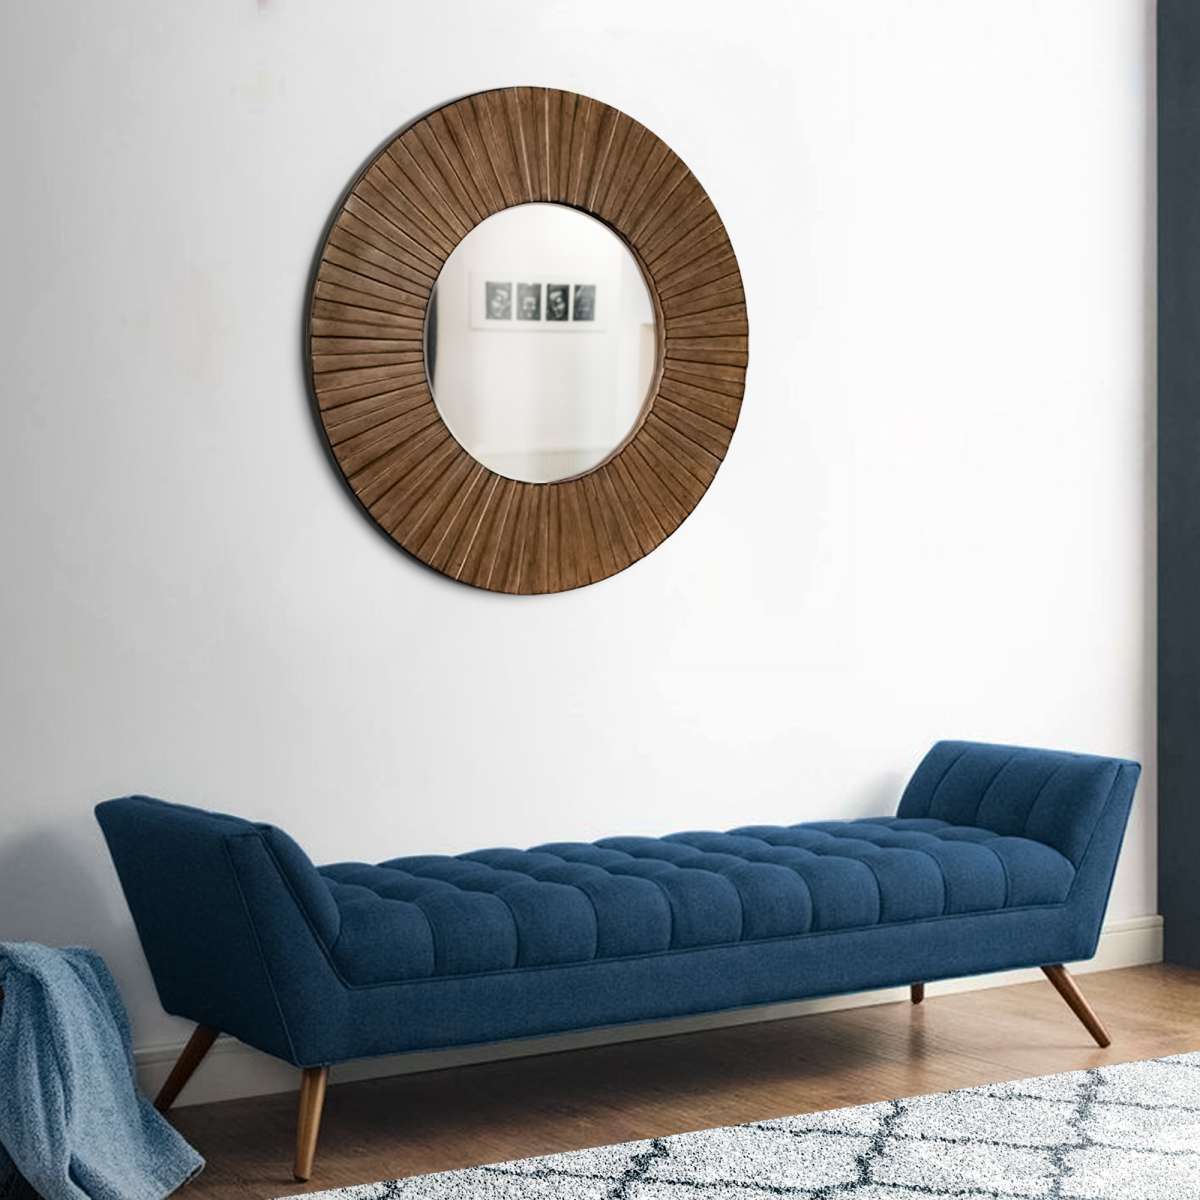 Transitional Sunburst Round Mirror With Wooden Frame, Brown By Benzara | Mirrors |  Modishstore 